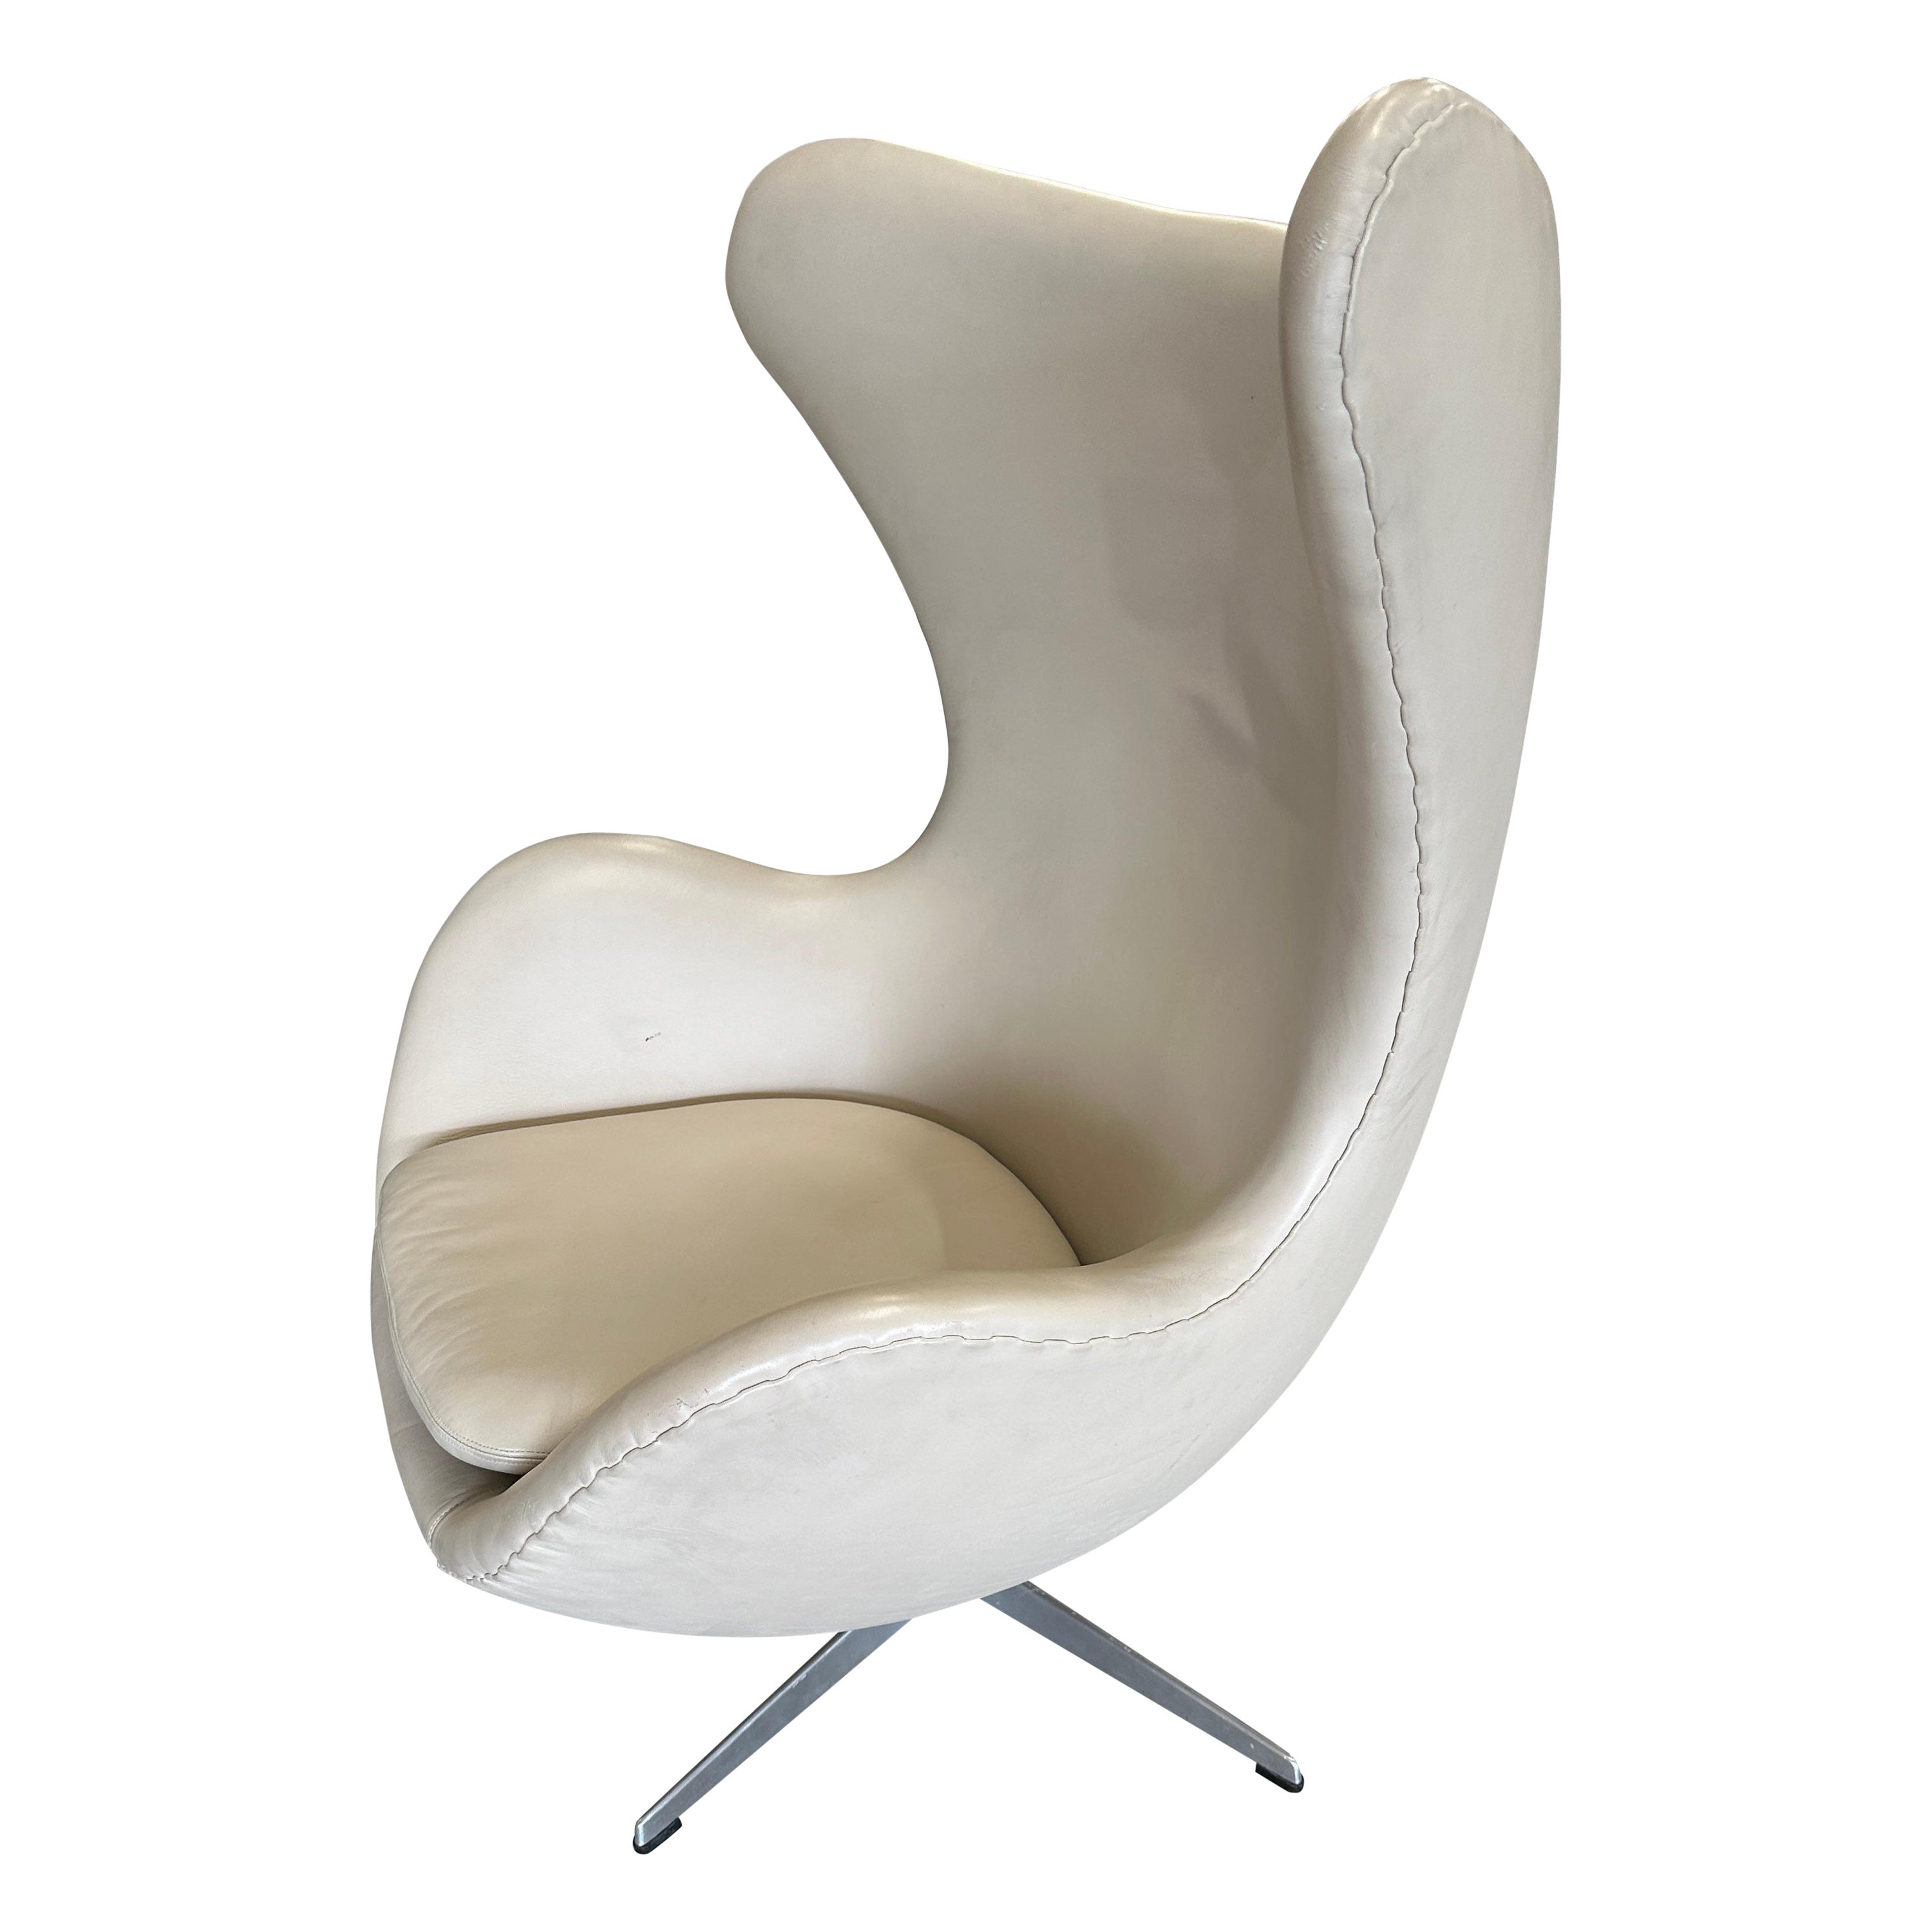 1966 Arne Jacobsen for Fritz Hansen Egg Chair in Leather For Sale